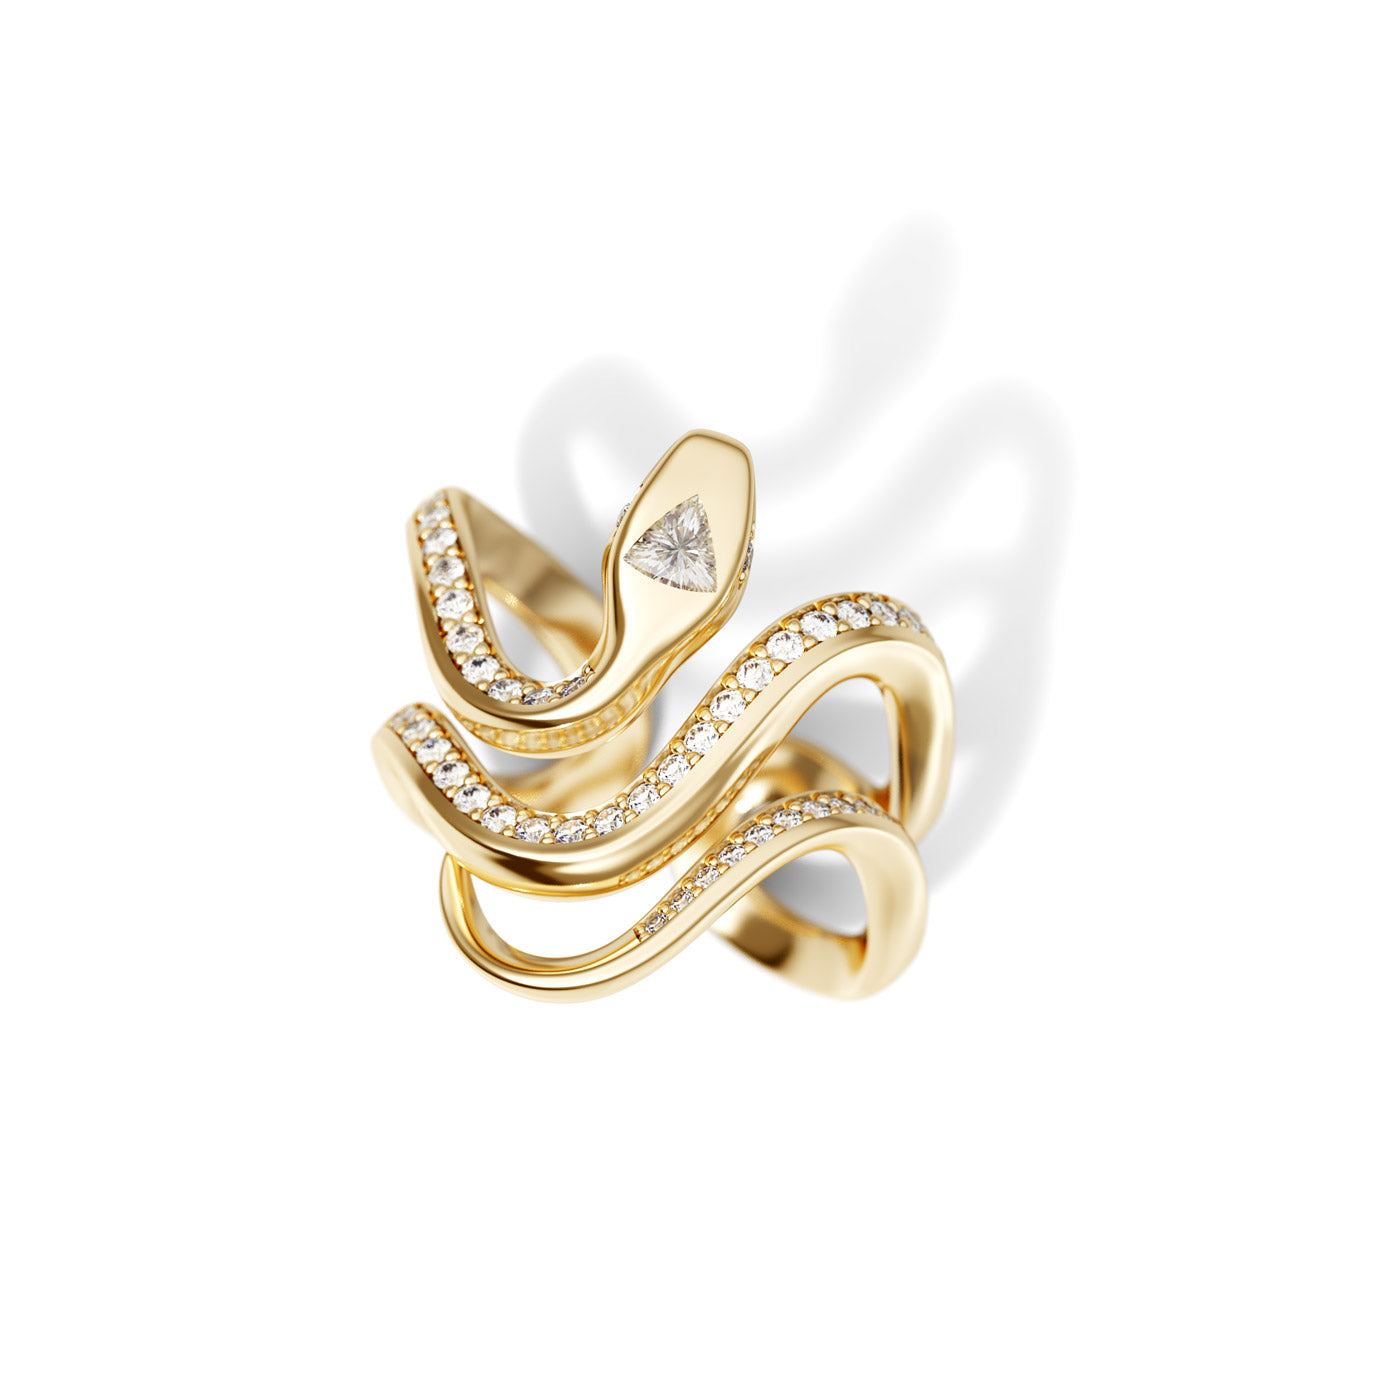 Diamond Snake Ring in 18K Yellow Gold